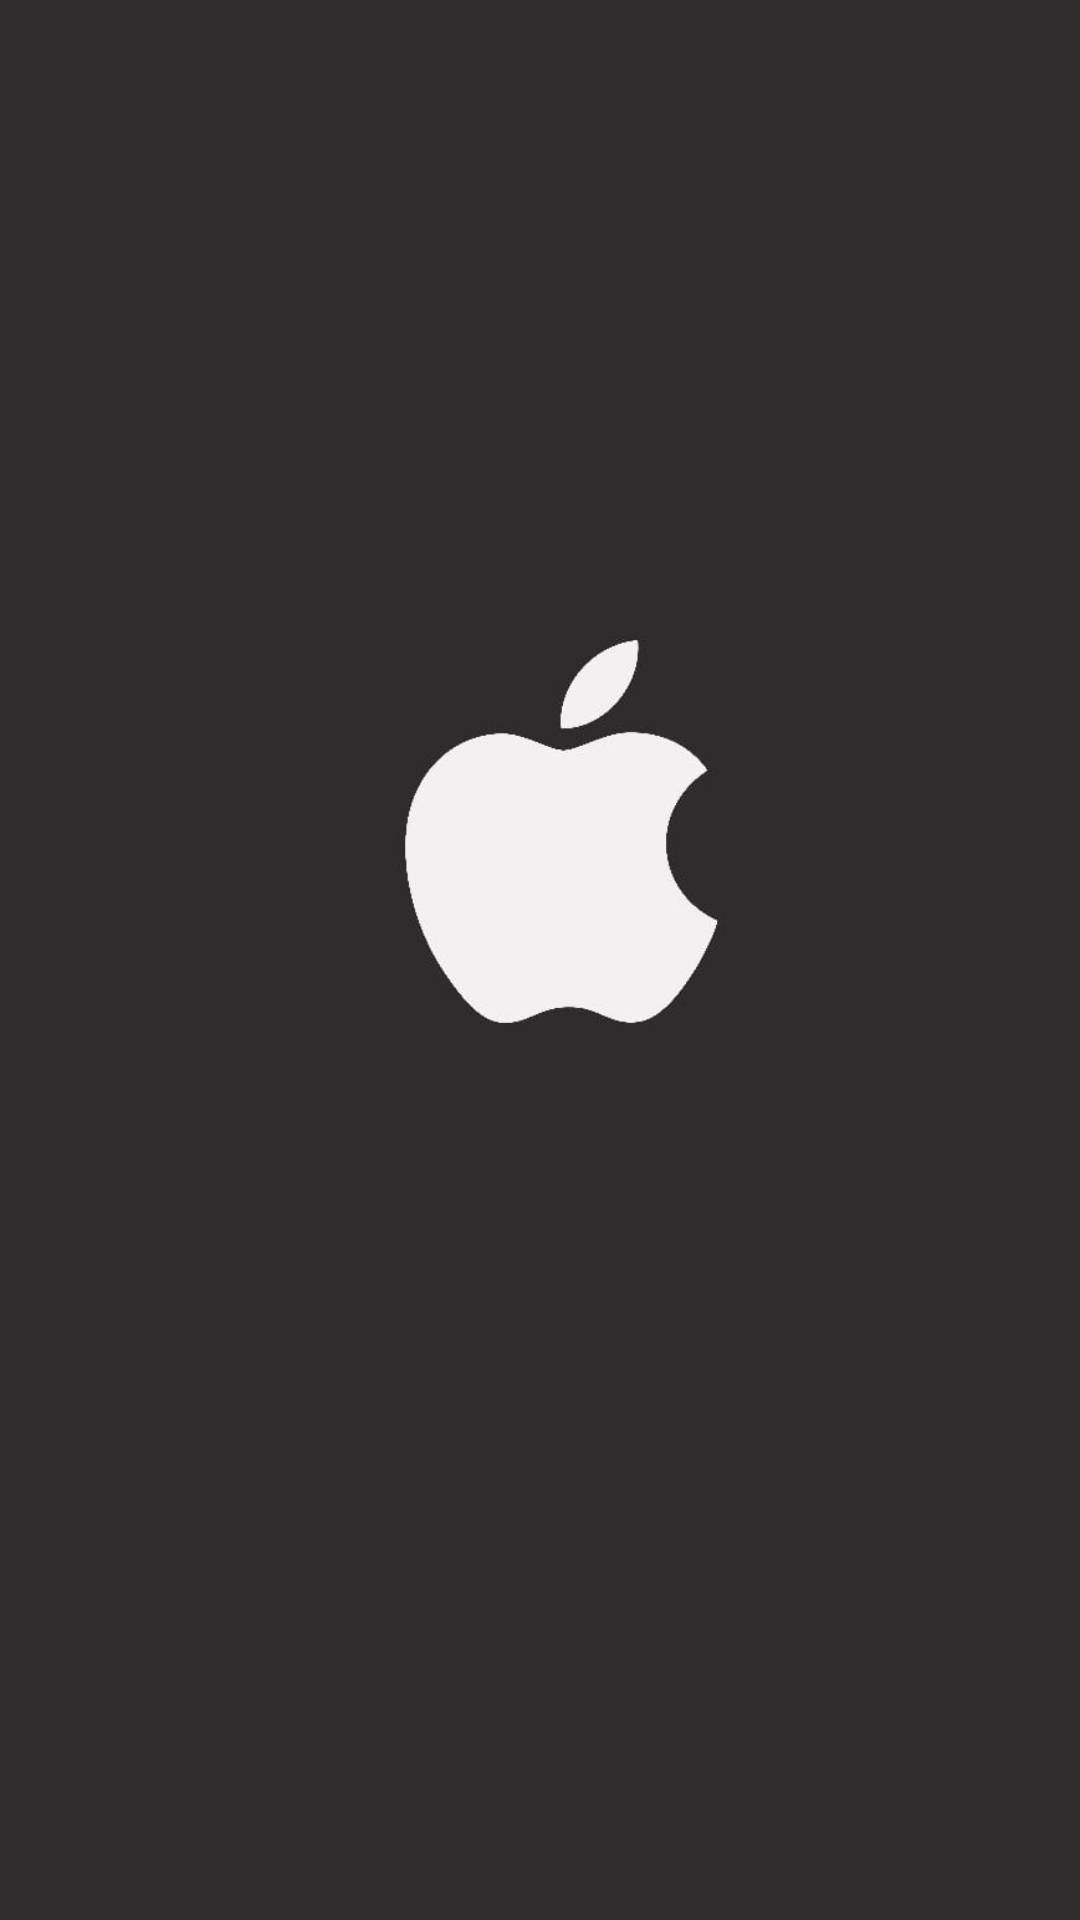 Apple Logo Iphone 7 Original Picture